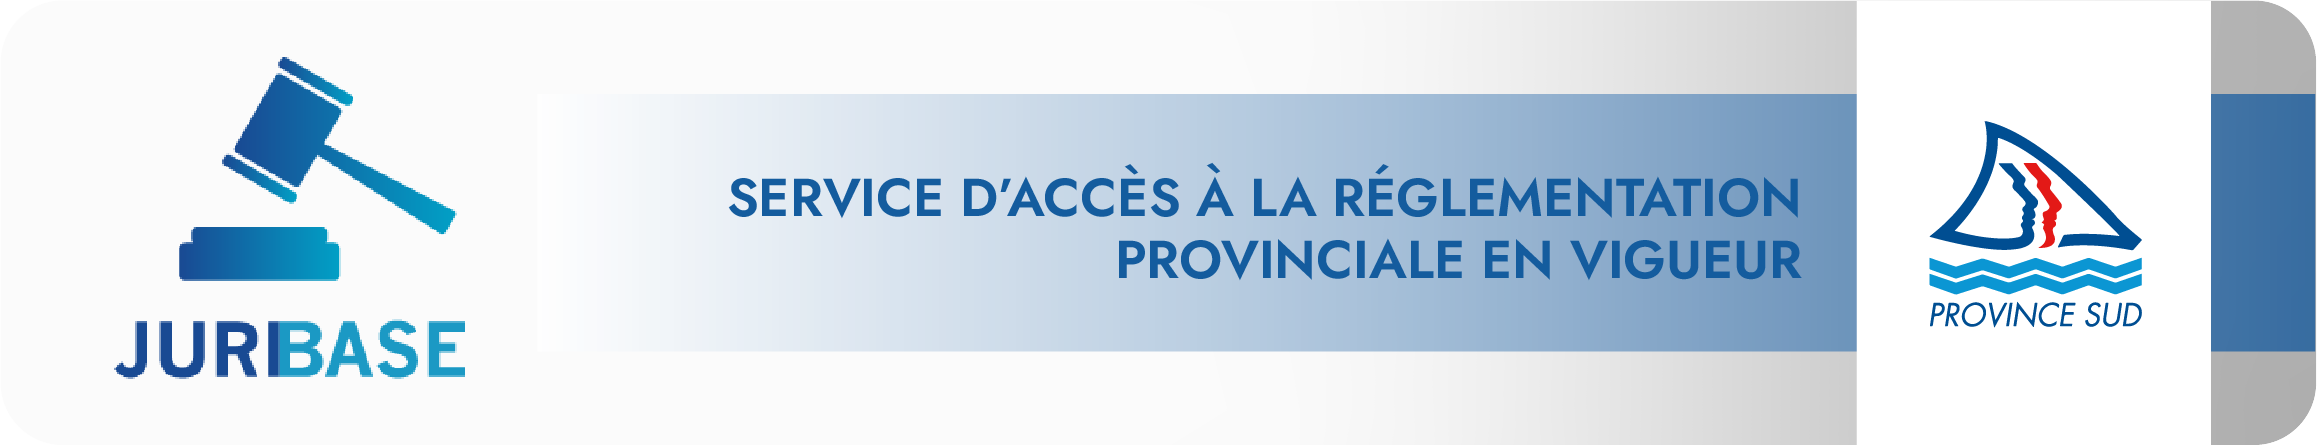 Service d’accès à la réglementation provinciale en vigueur (JuribaseWeb)